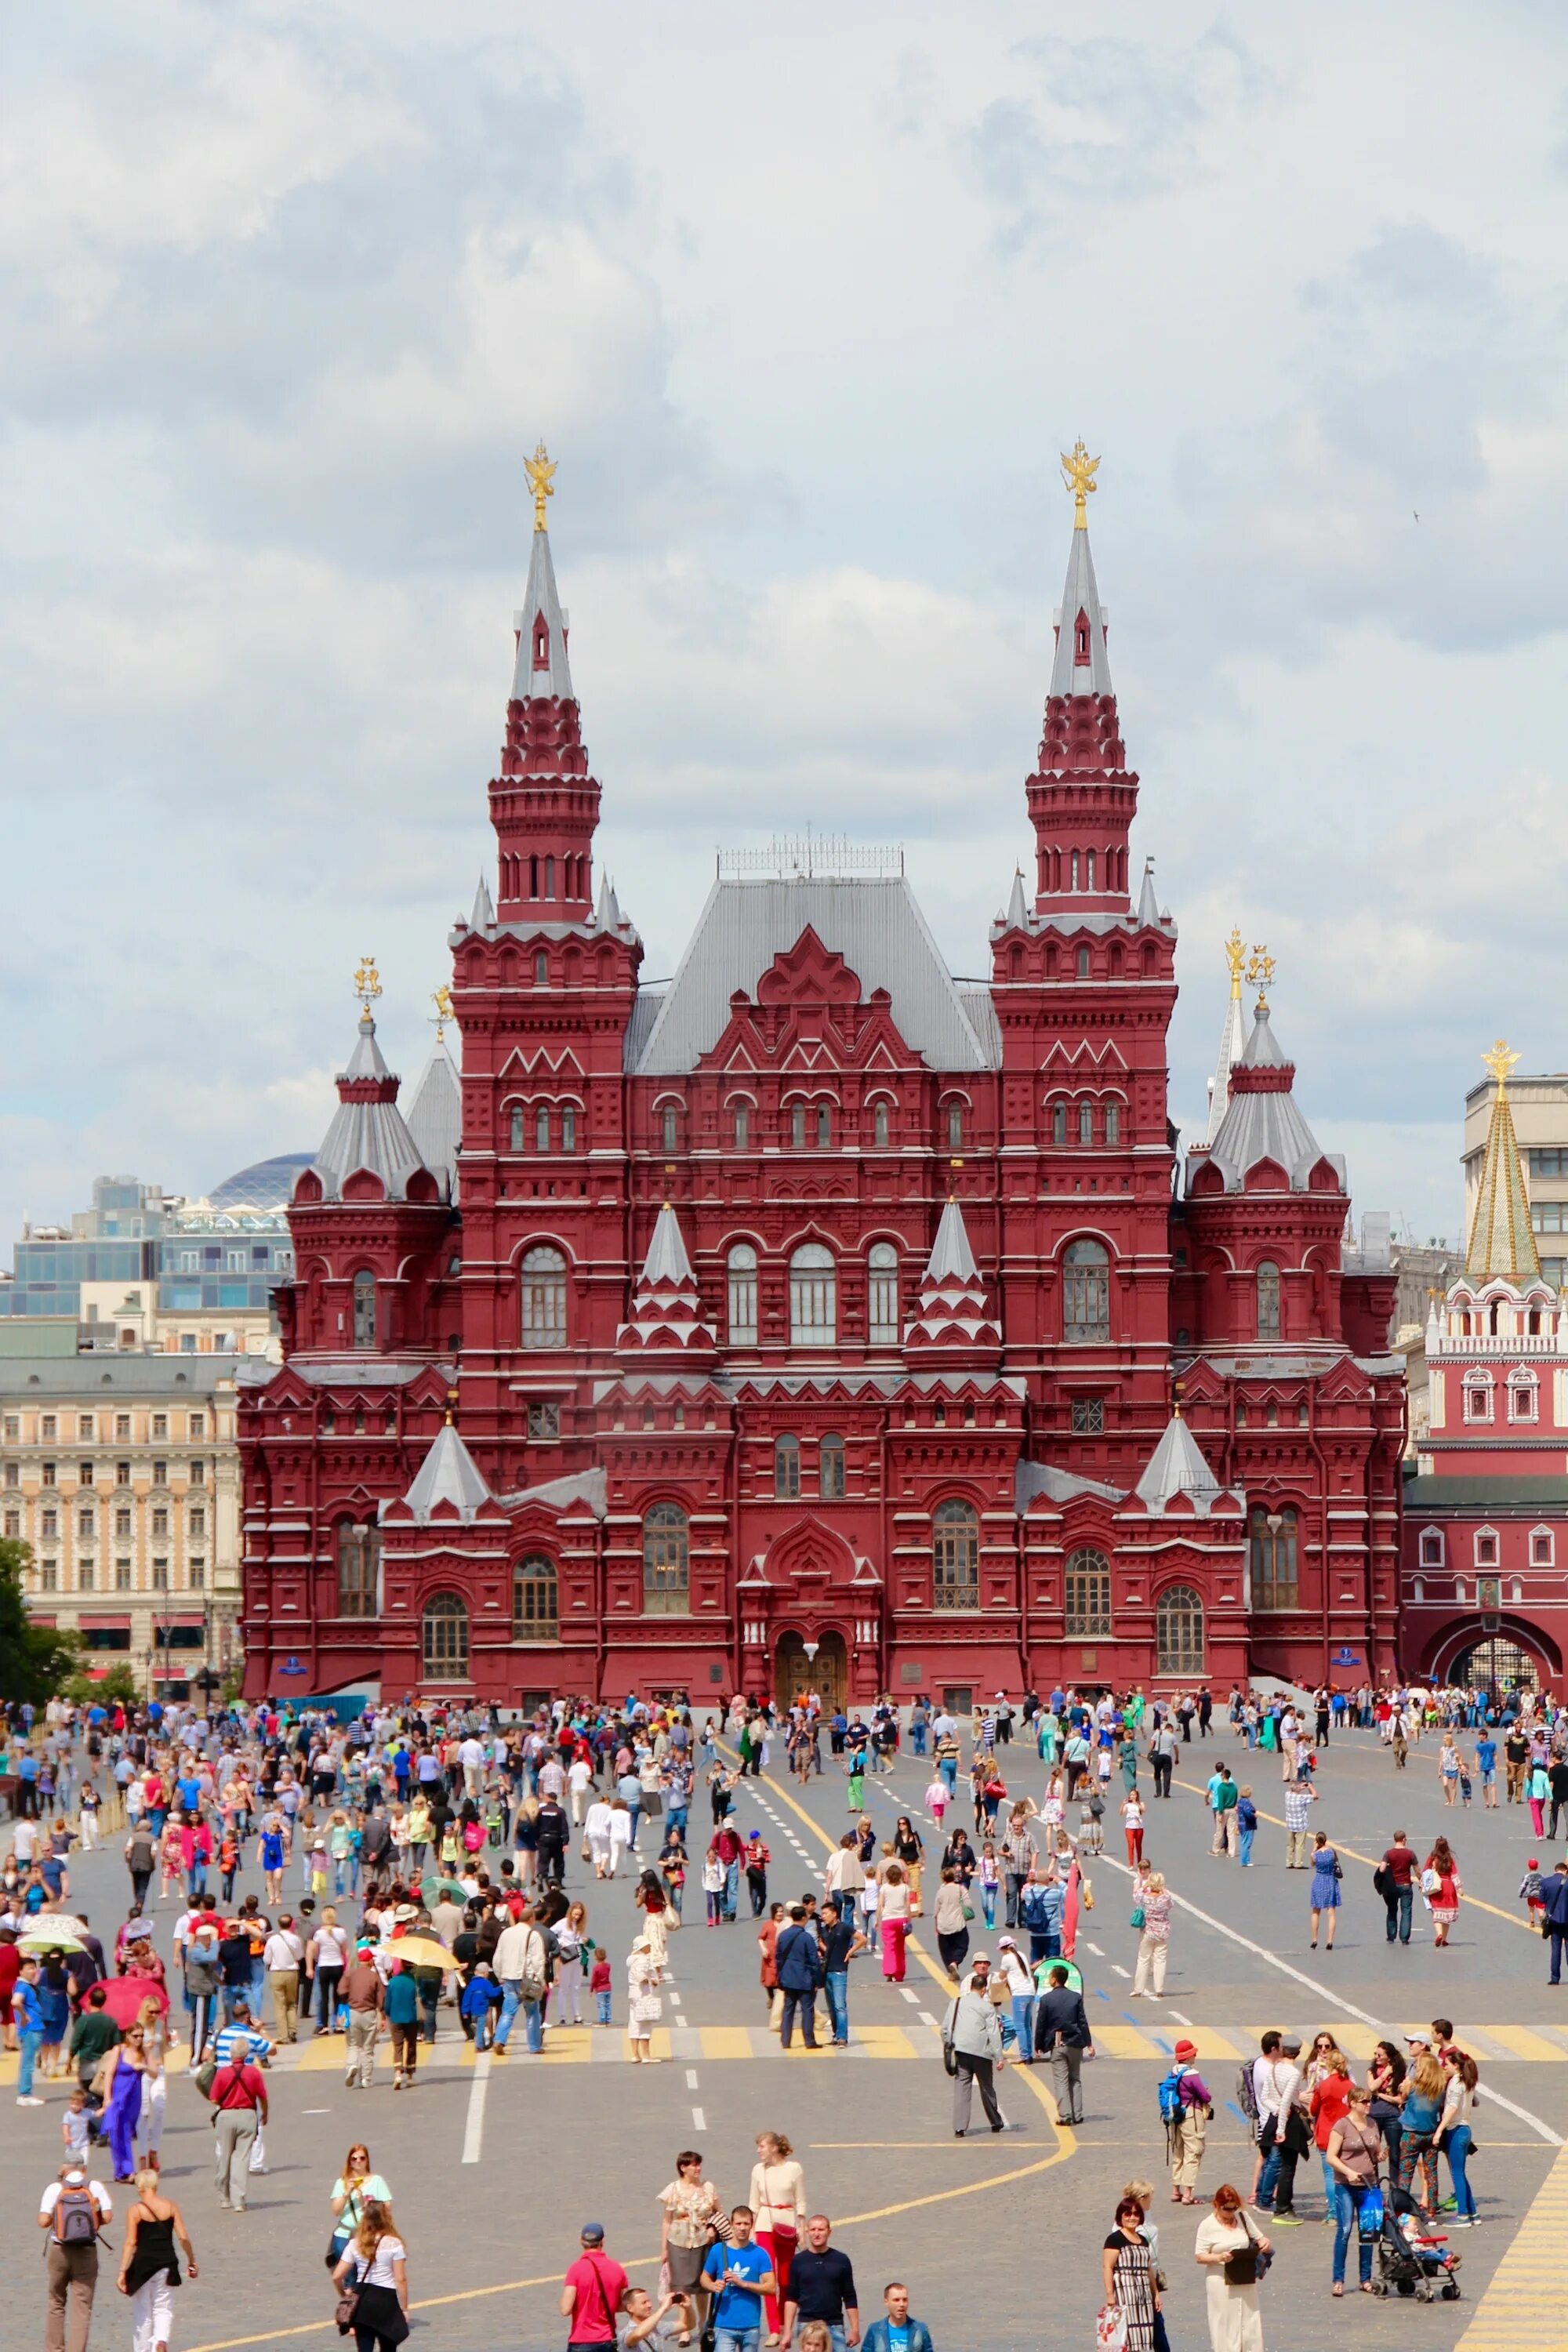 Москва Red Square. Площадь красной площади в Москве. Центр Москвы красная площадь. Красное здание на красной площади в Москве.